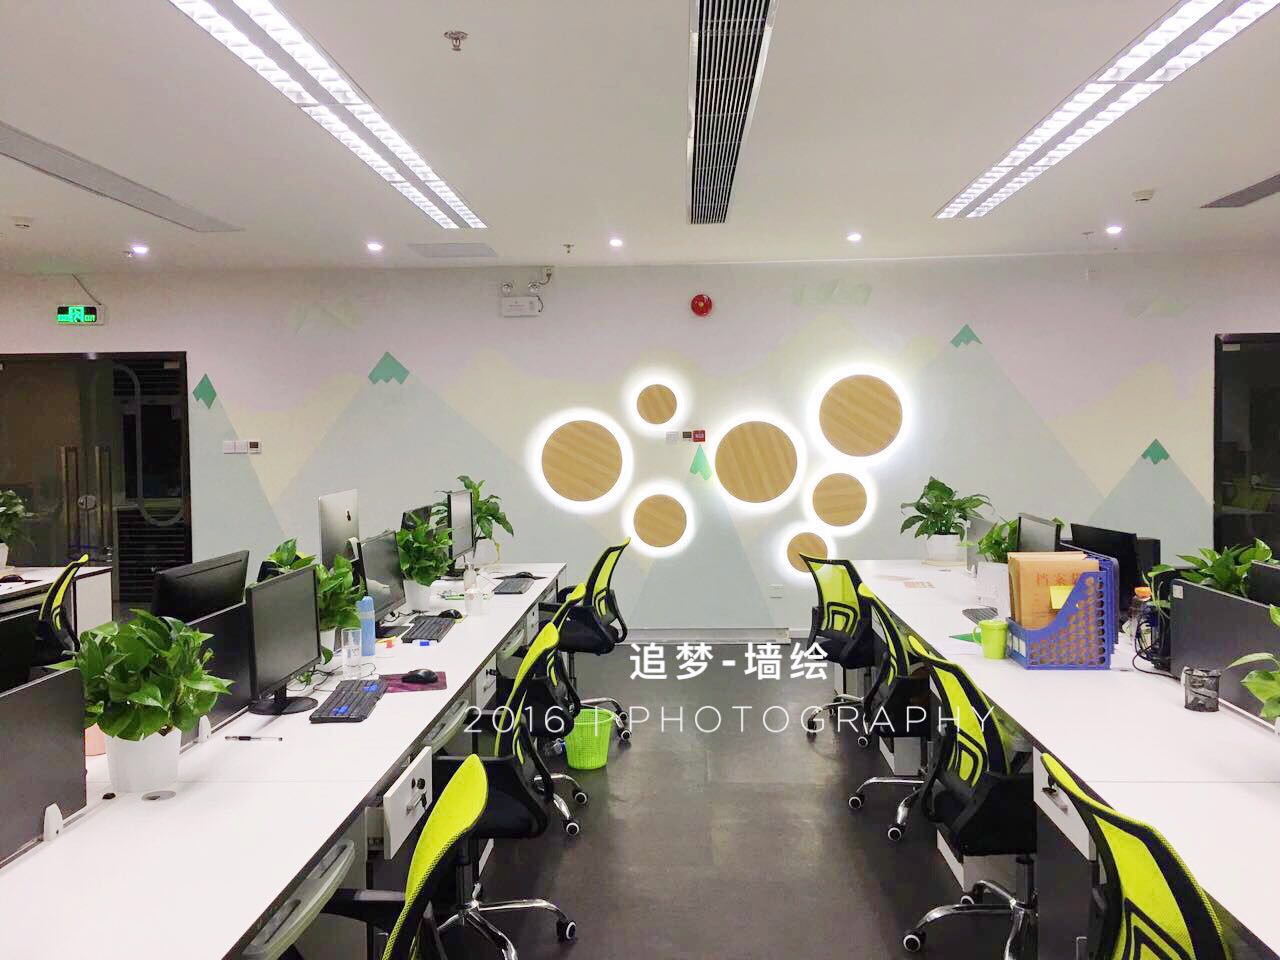 深圳办公室彩绘 深圳公司励志墙绘 办公室背景墙 追梦墙绘